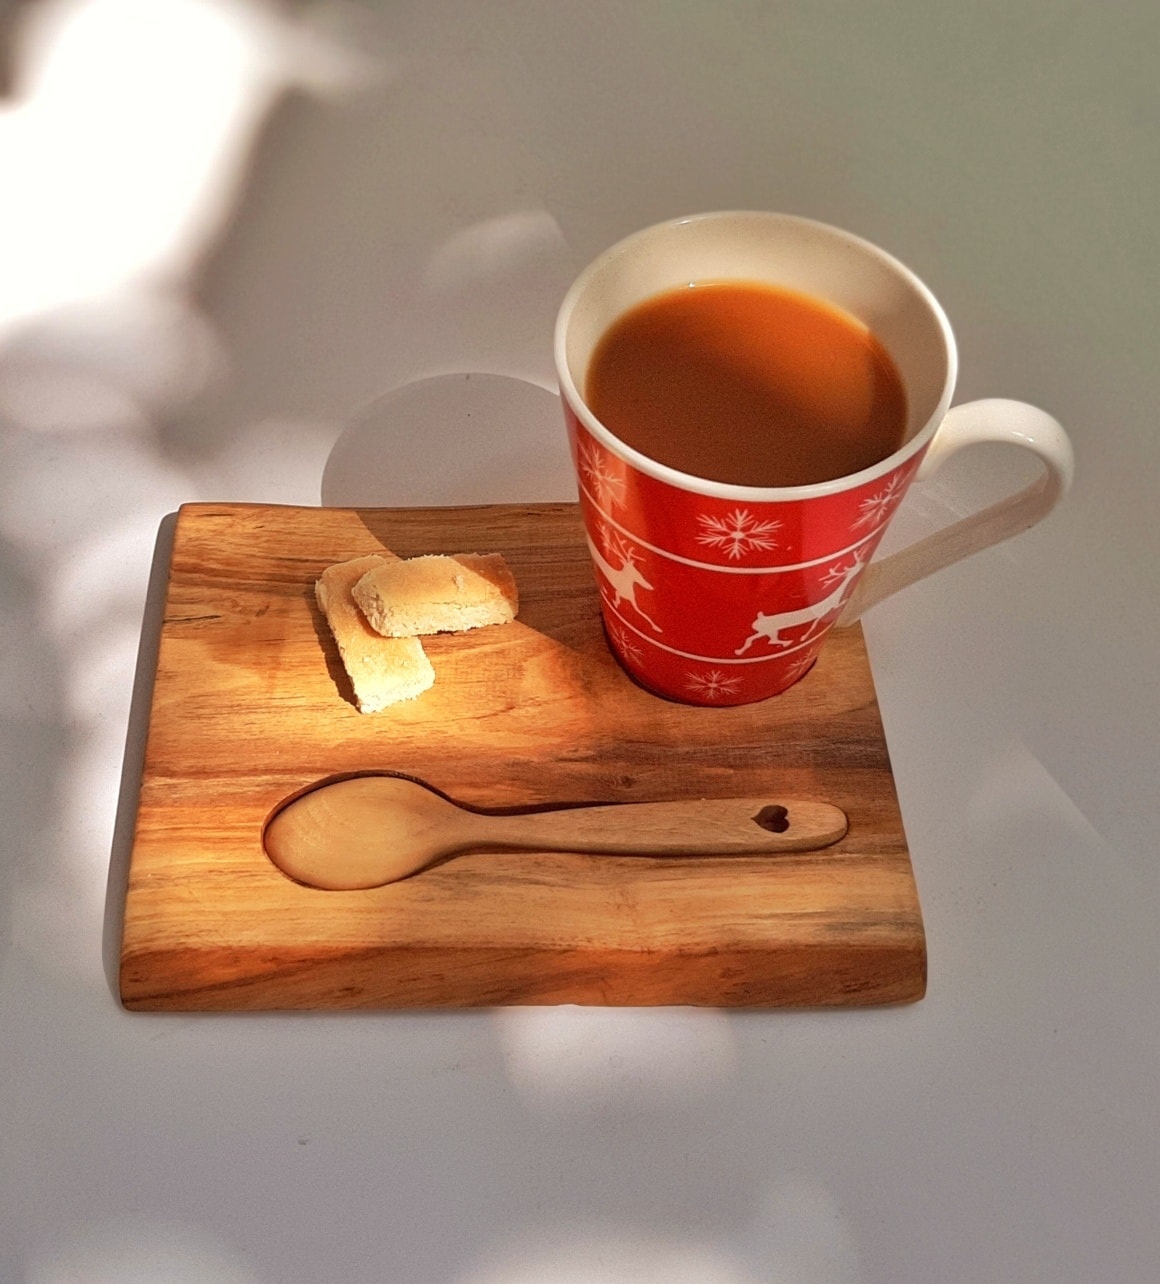 Tăviță plus linguriță pentru servit cafeaua sau ceaiul, realizate din esență de lemn de nuc